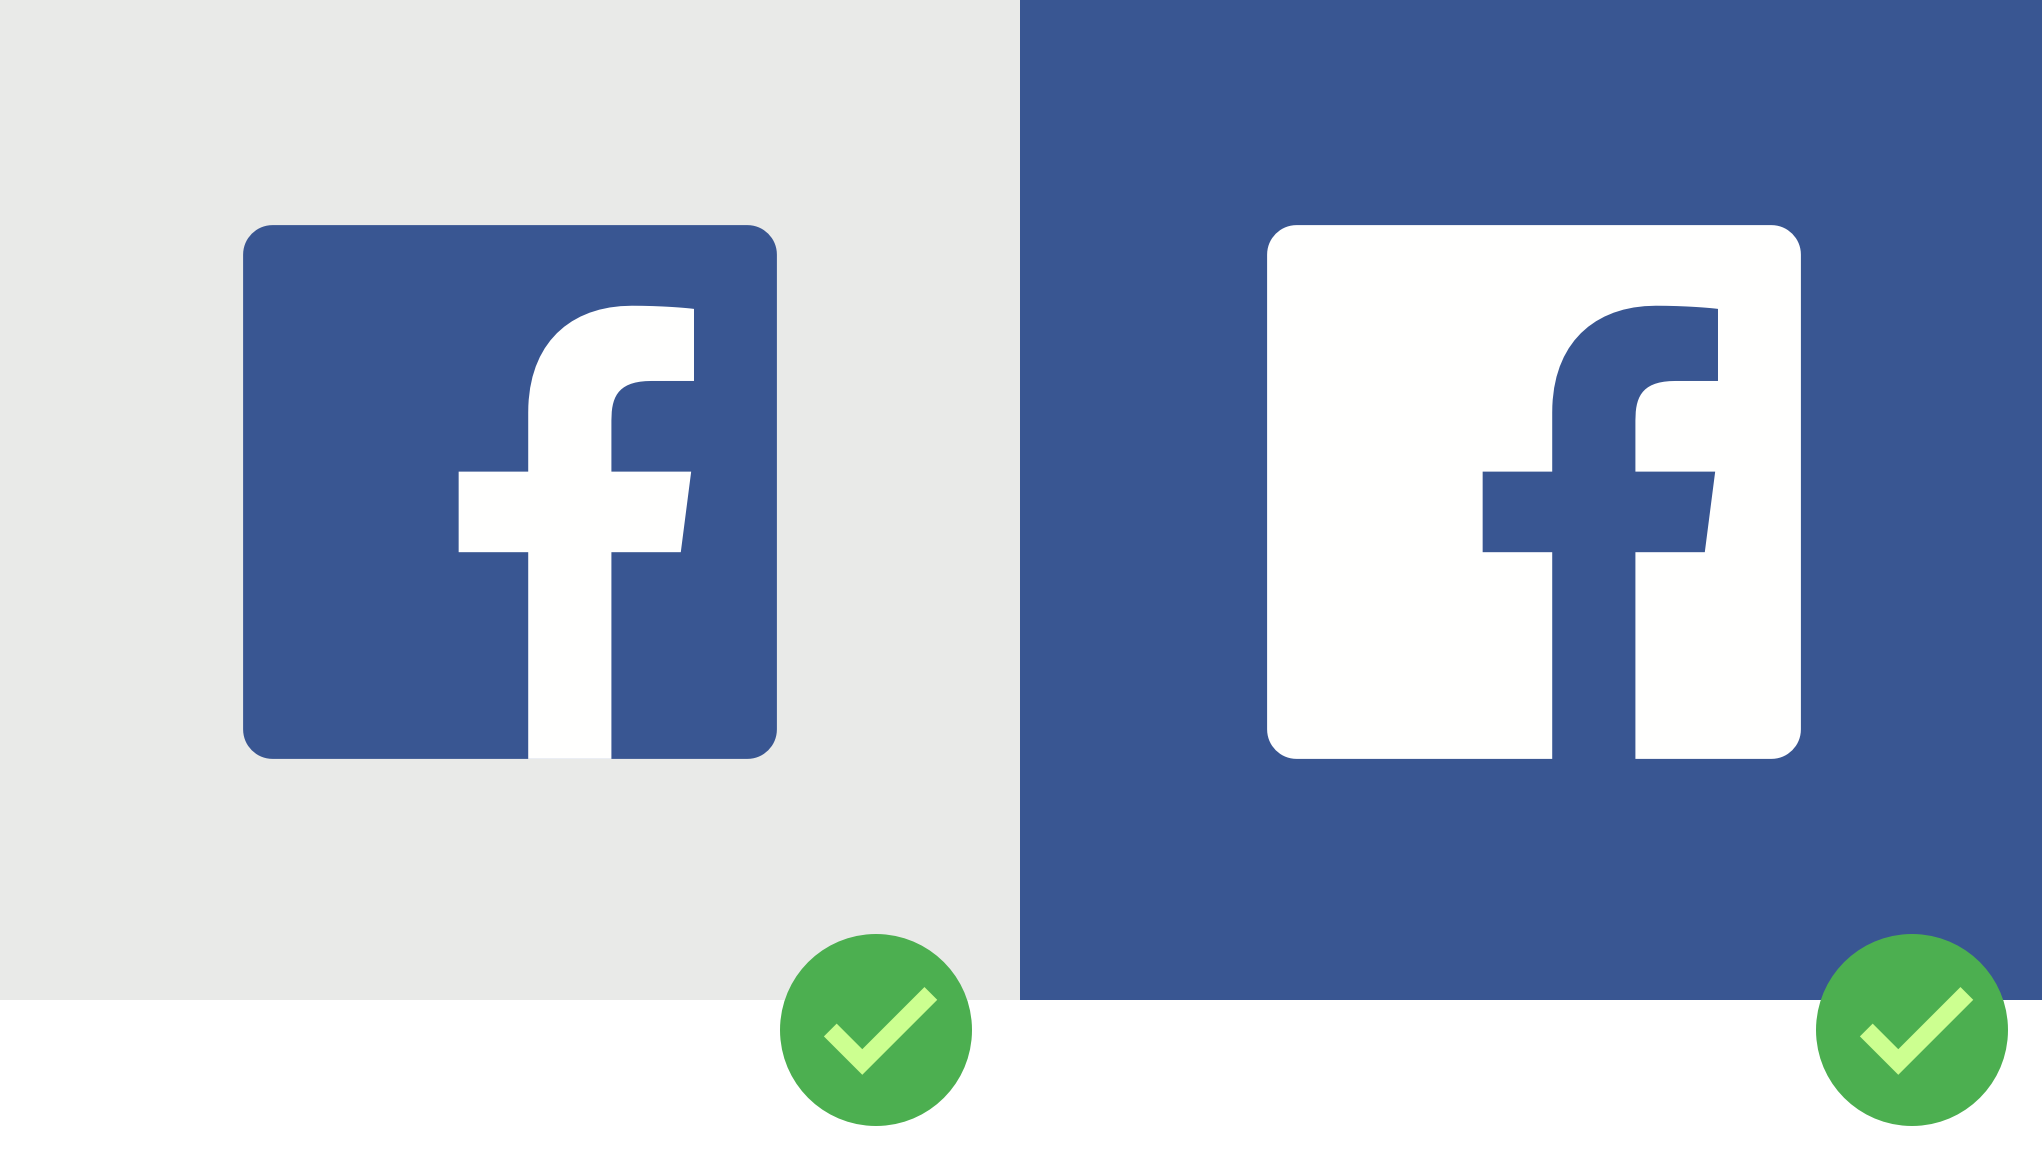 facebook icon vector - Asafon.ggec.co